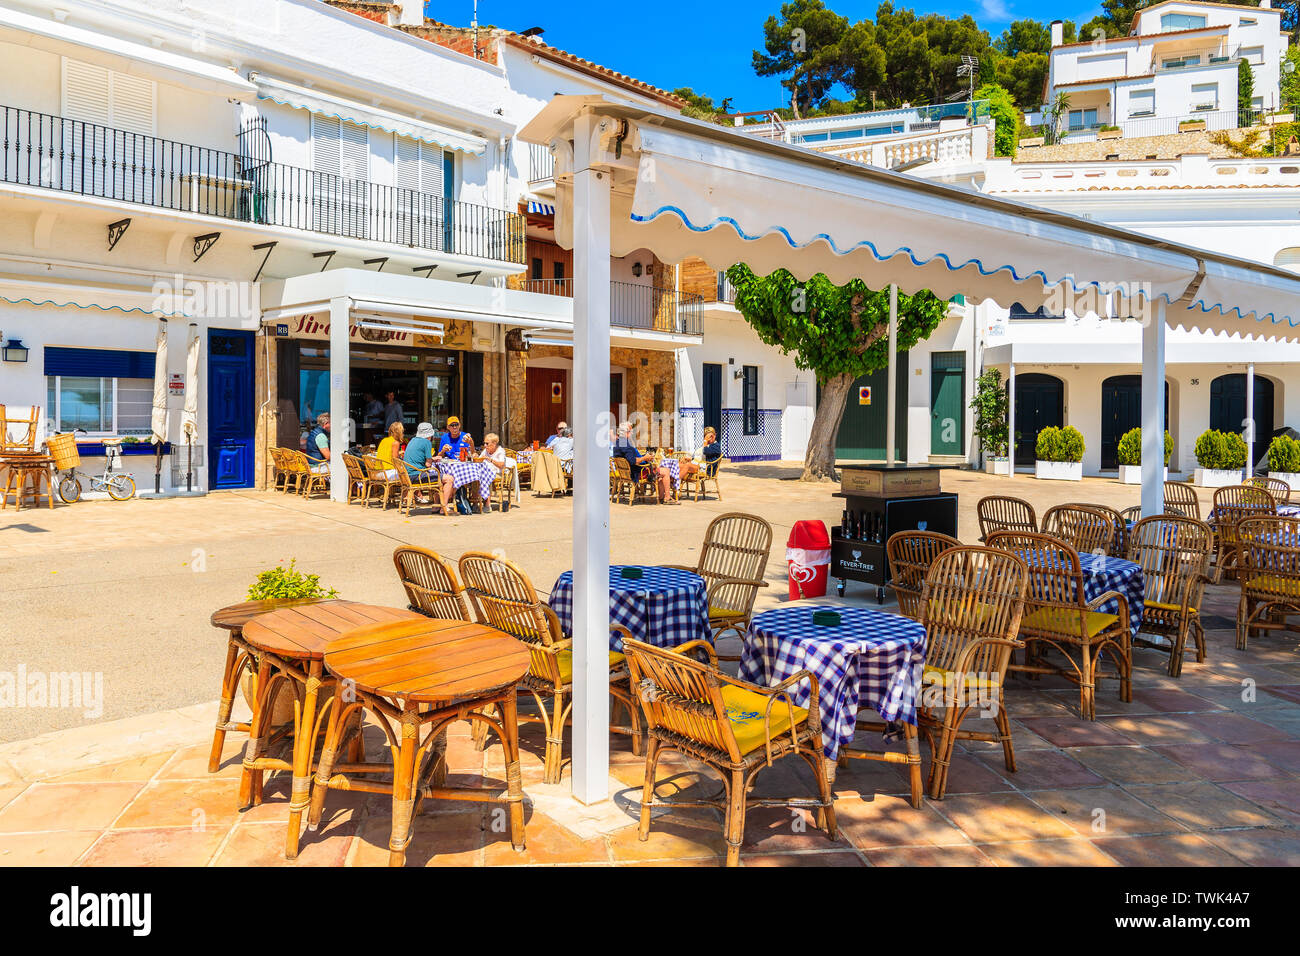 Il villaggio di Llafranc, Spagna - giu 6, 2019: Ristorante tavoli su strada del piccolo villaggio di pescatori di Llafranc che si trova in Costa Brava, Spagna. Foto Stock